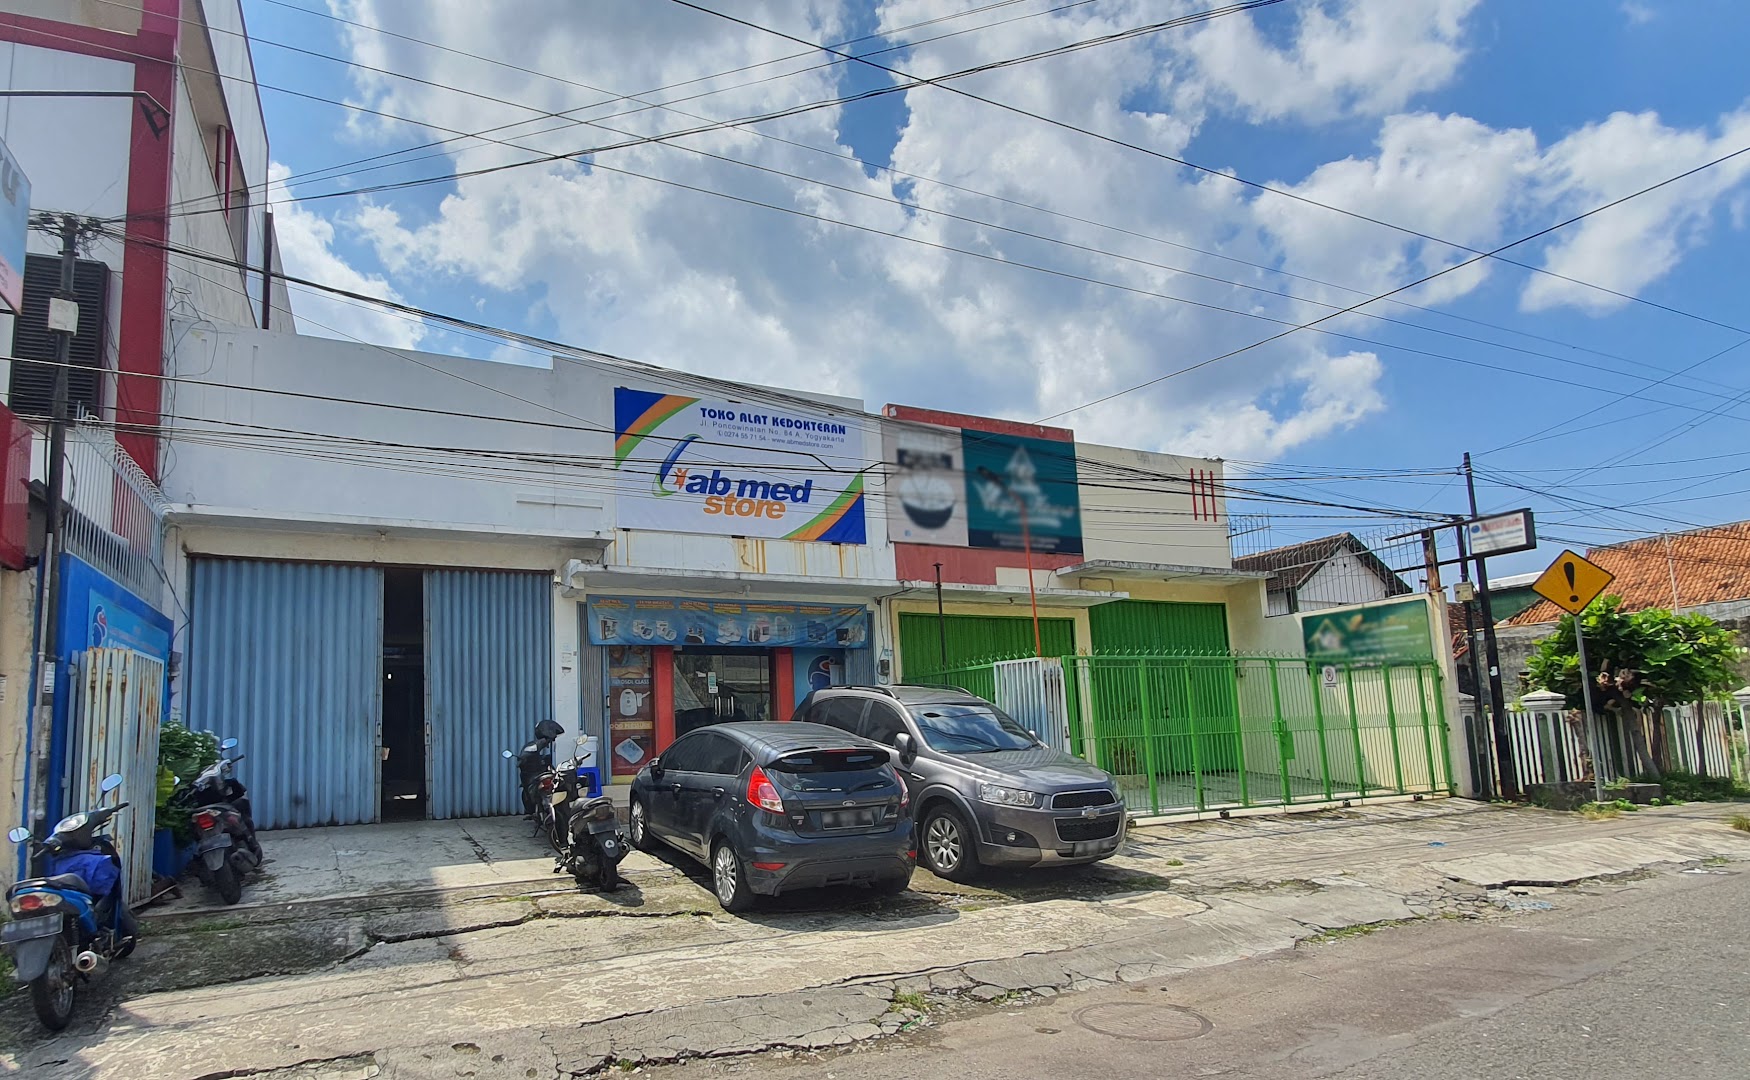 Abmed Store Yogyakarta | Toko Alat Kesehatan Yogyakarta Photo